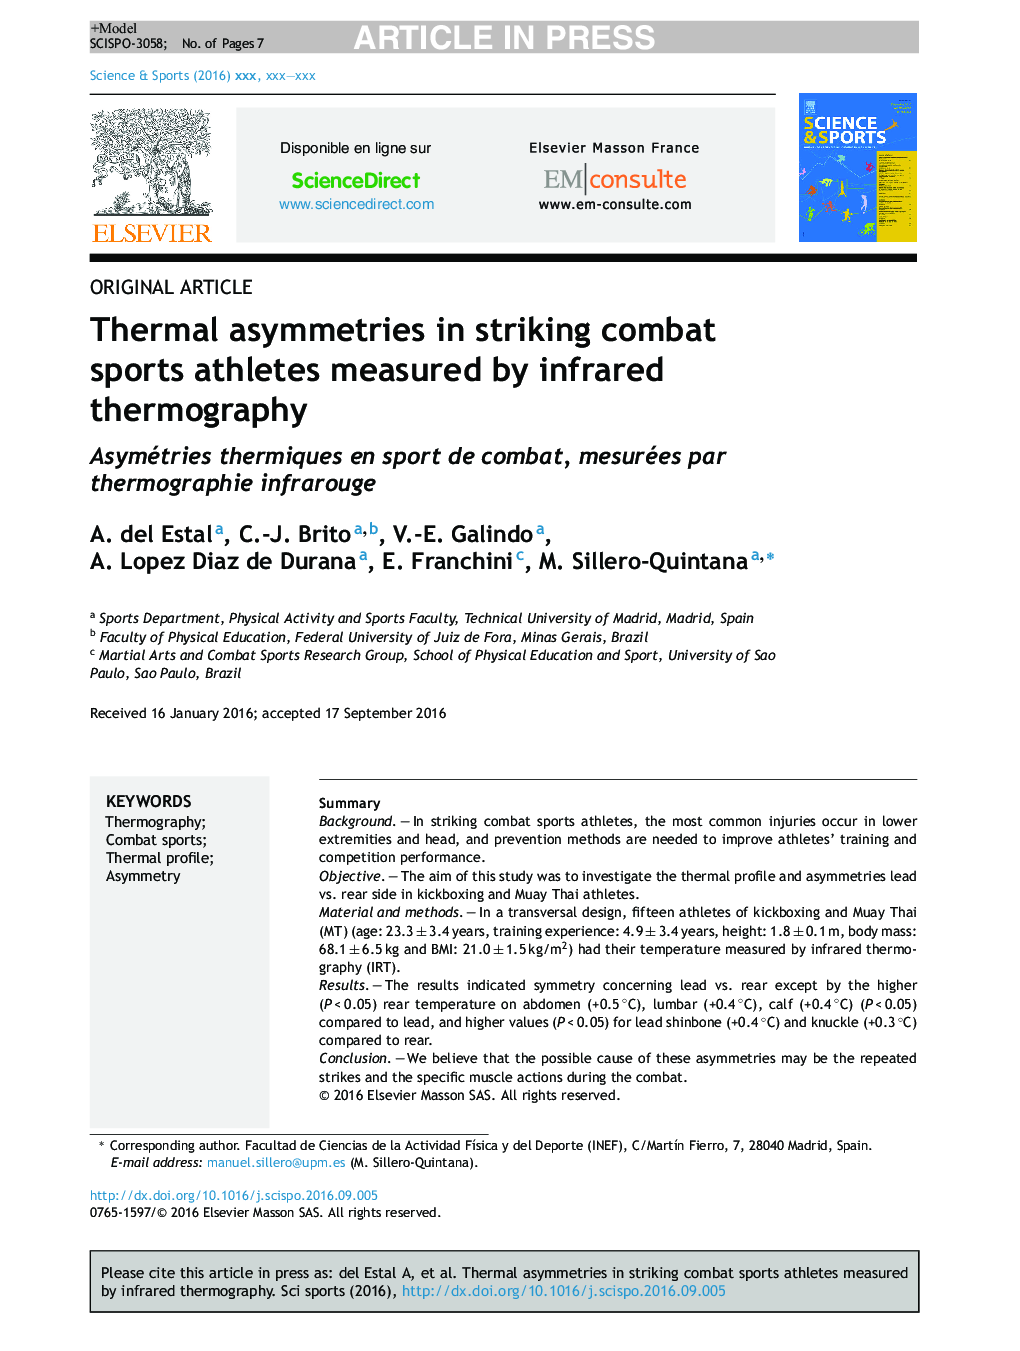 نامتقارن حرارتی در ورزشکاران برجسته مبارزه با ورزش با استفاده از ترموگرافی مادون قرمز اندازه گیری می شود 